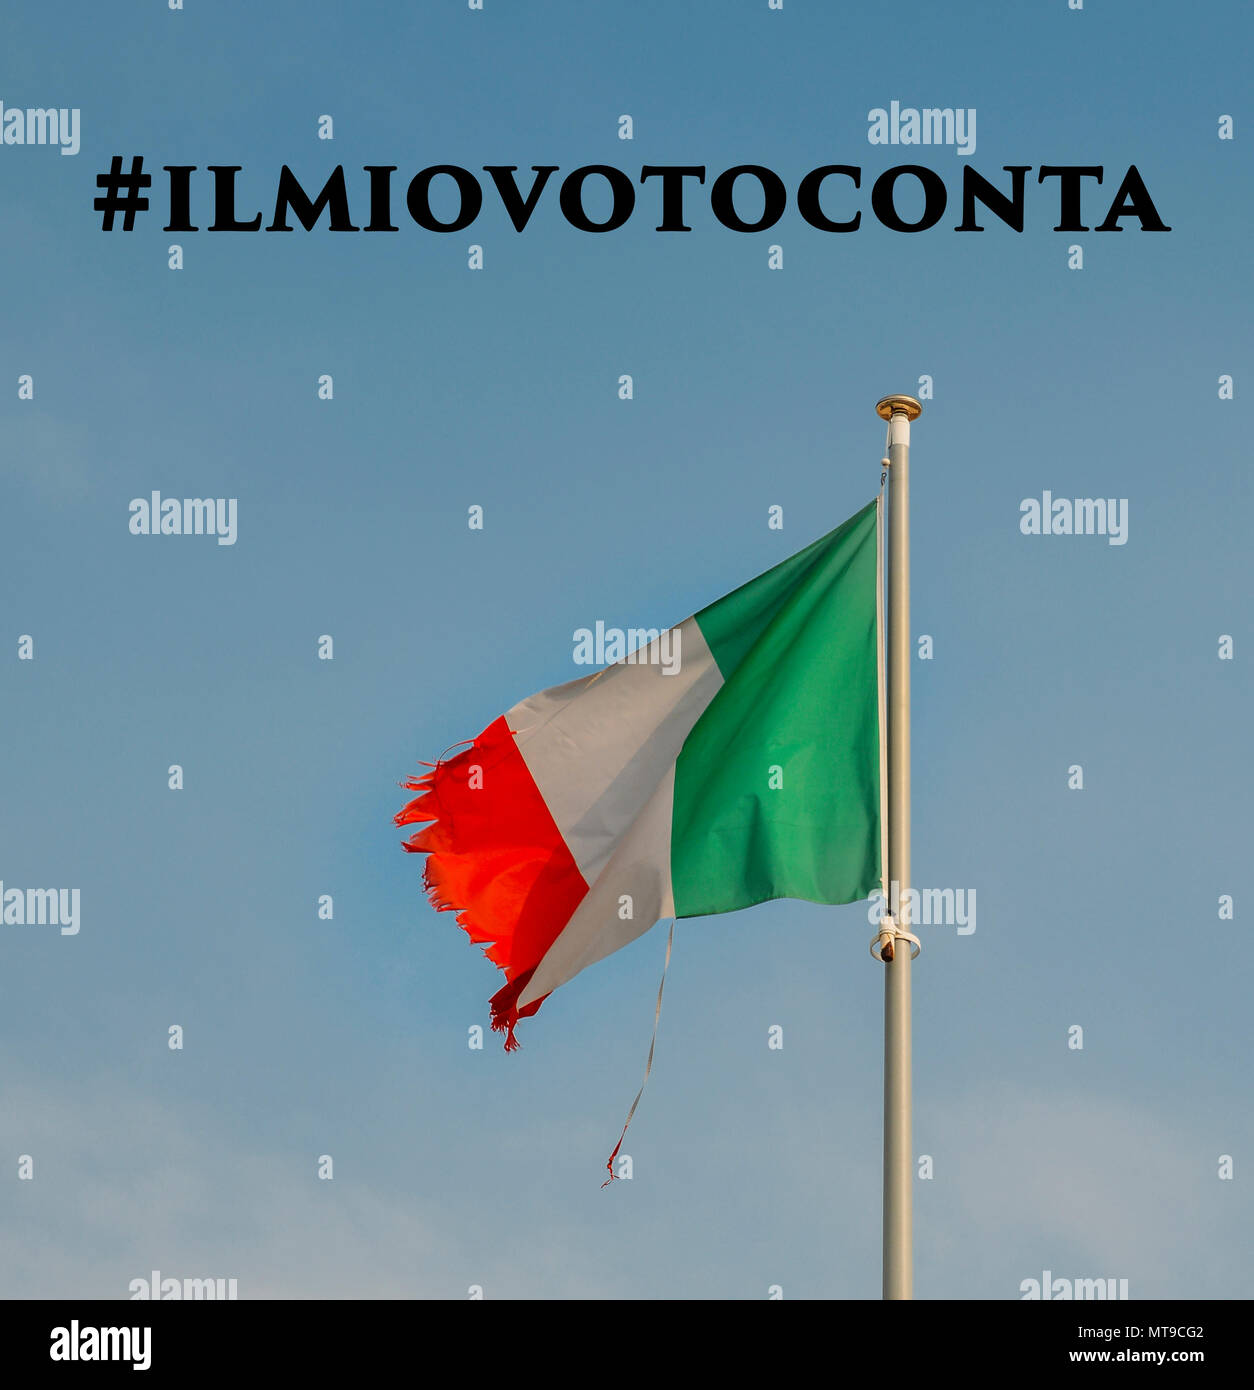 Italienische Flagge am Mast weht im Wind mit zerrissenen Ecken. Ilmiovoto conta ist in Italienisch ins Englische übersetzt meine Stimme zählt zu meinen folgenden Neuwahl im Jahr 2018 aufgerufen werden Stockfoto